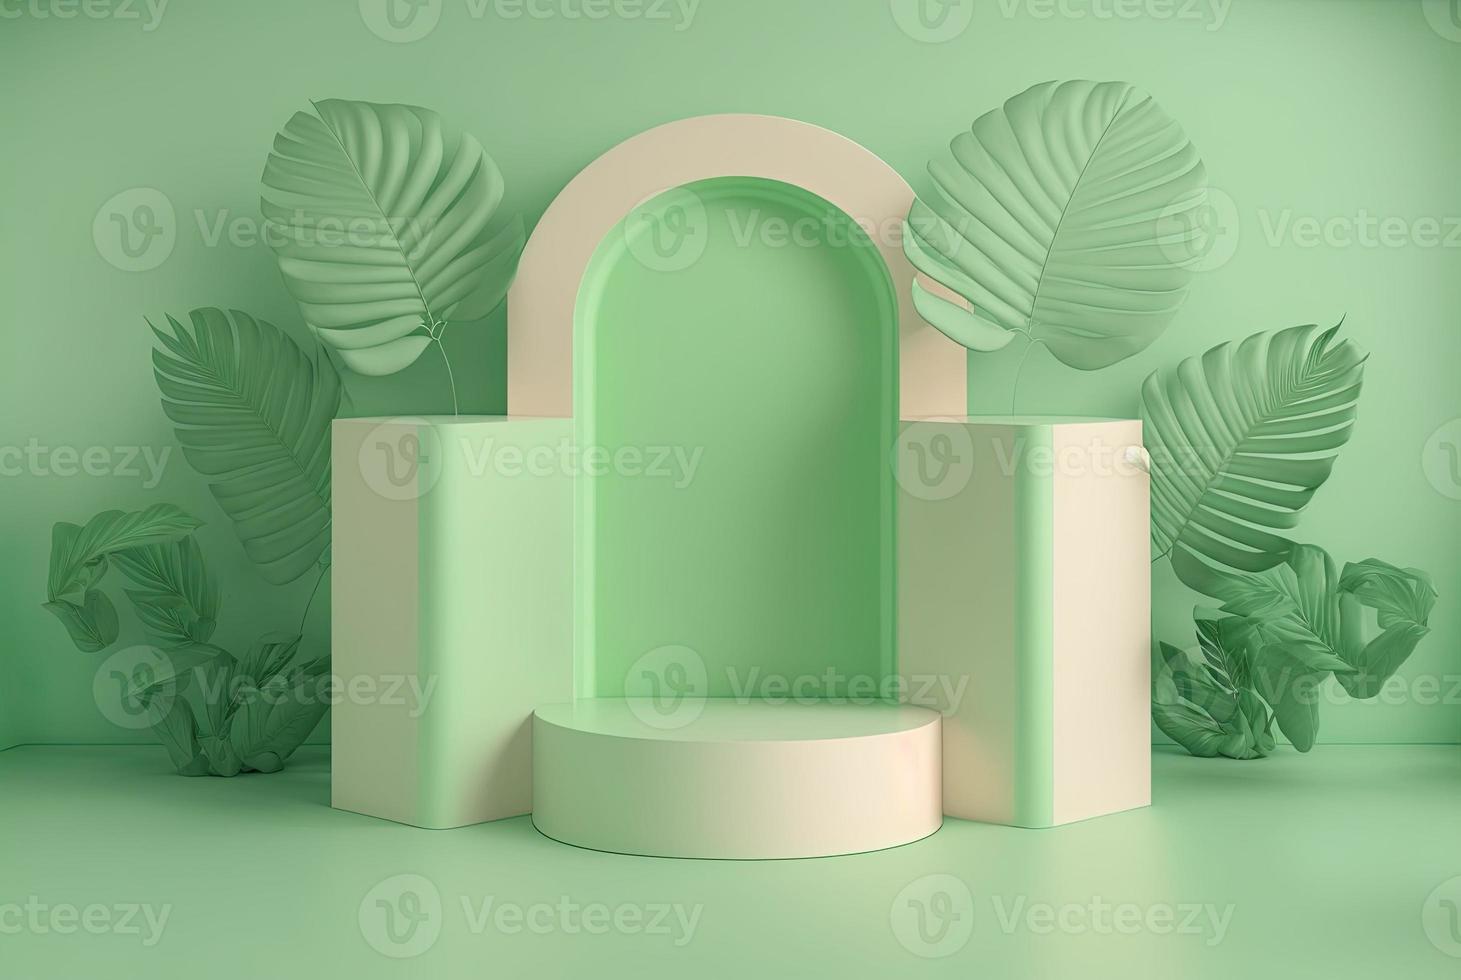 Ilustração 3D realista do pódio verde suave com folhas ao redor para exibição do produto foto